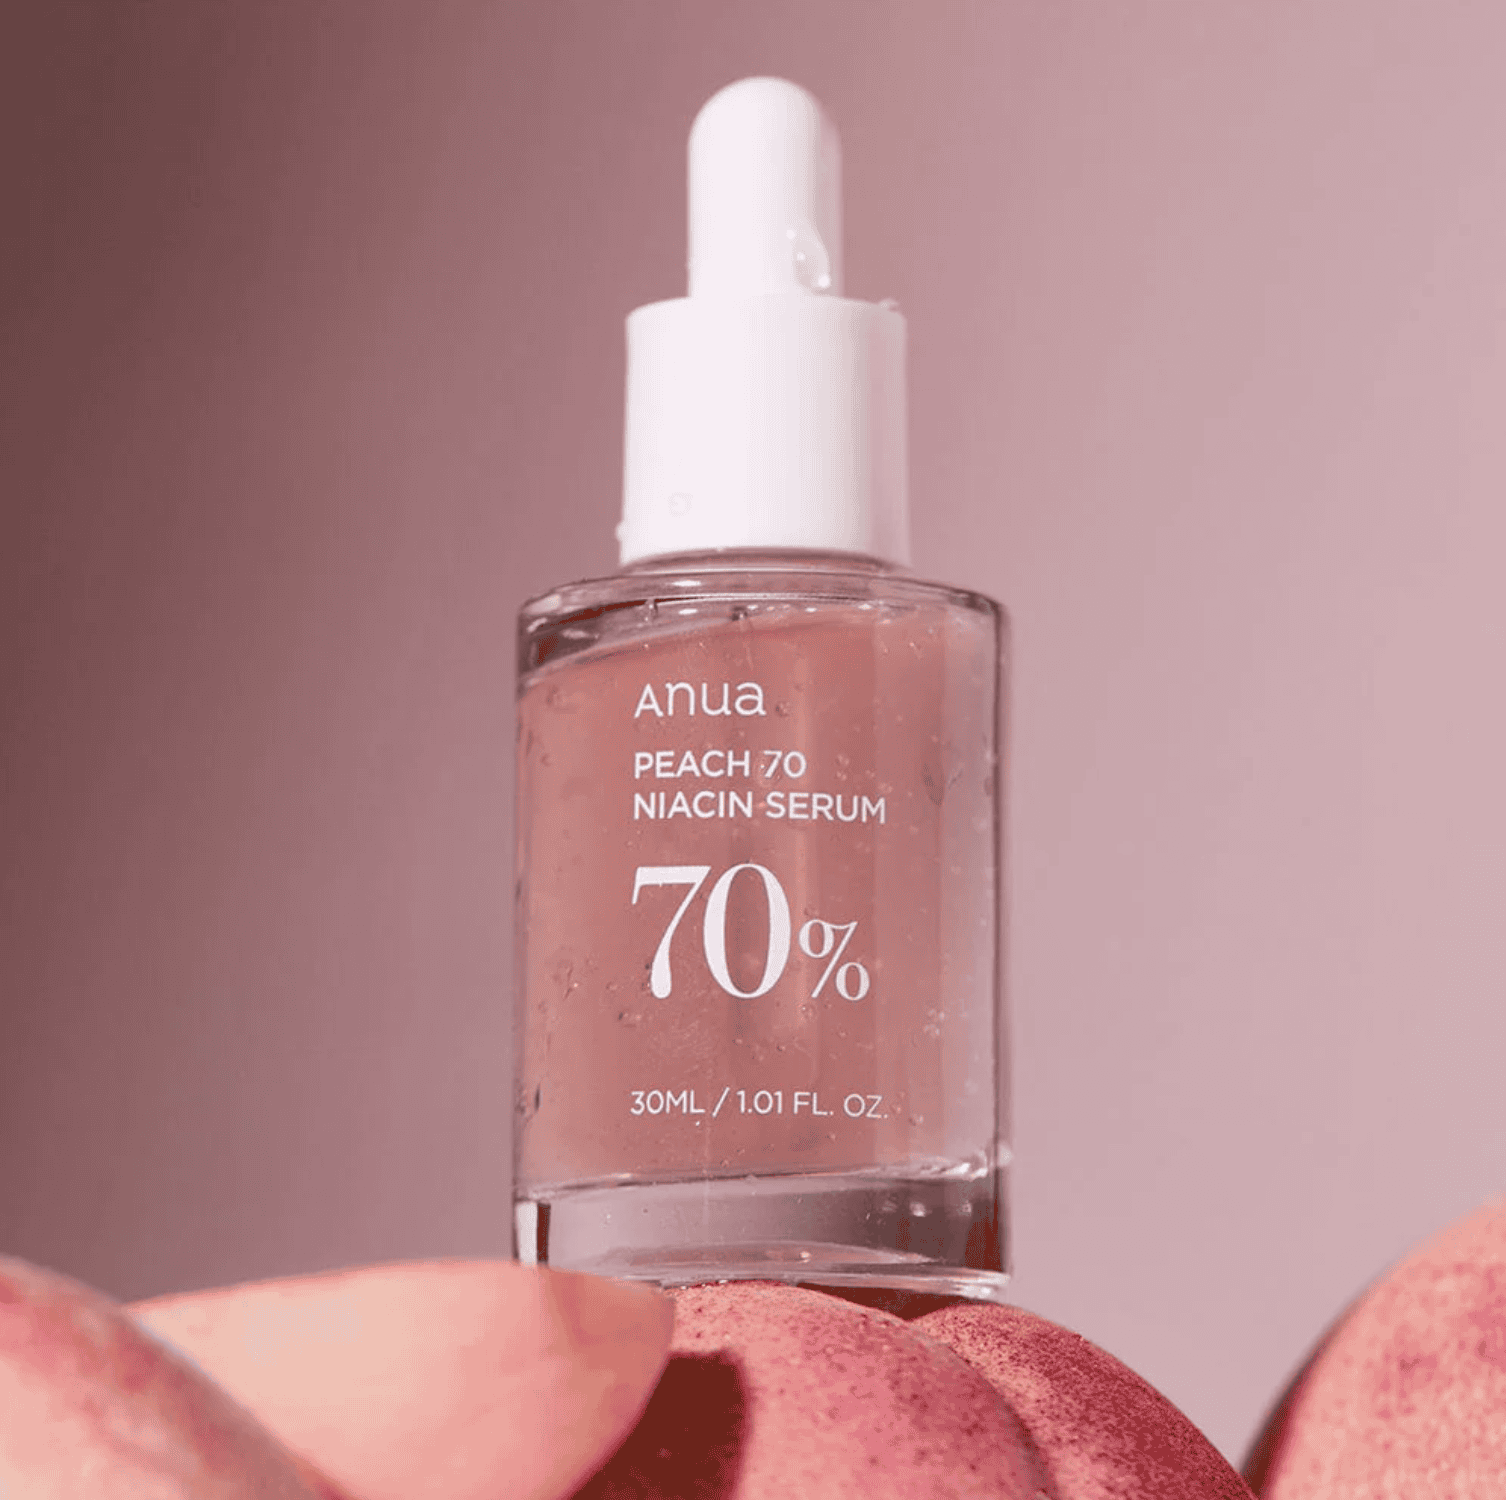 Anua Peach 70% Niacinamide Serum, 30ml